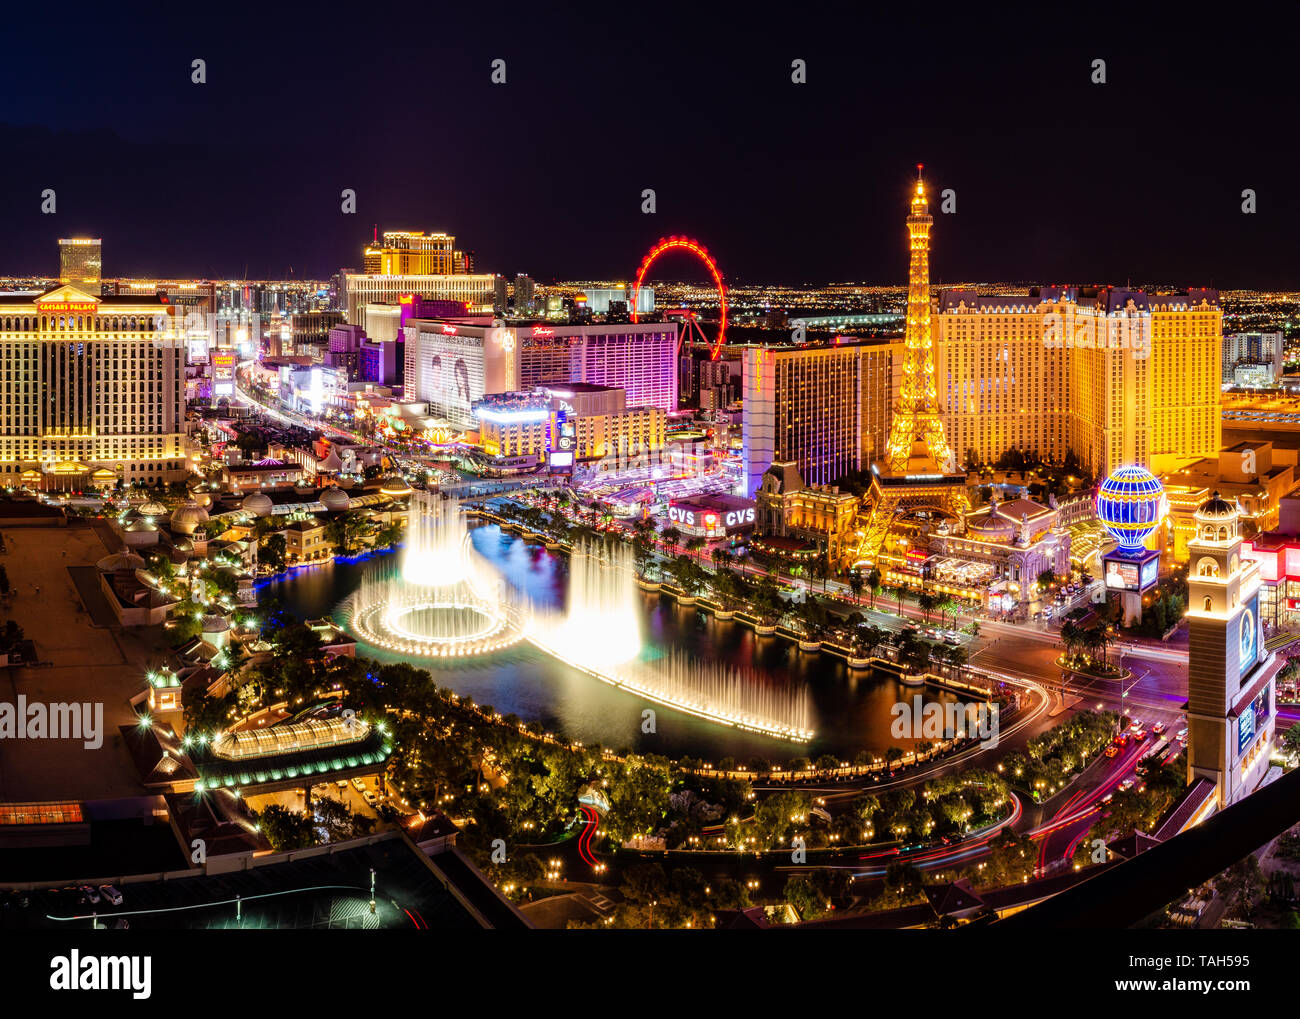 Playera colorida de Las Vegas, Nevada con diseño de Skyline